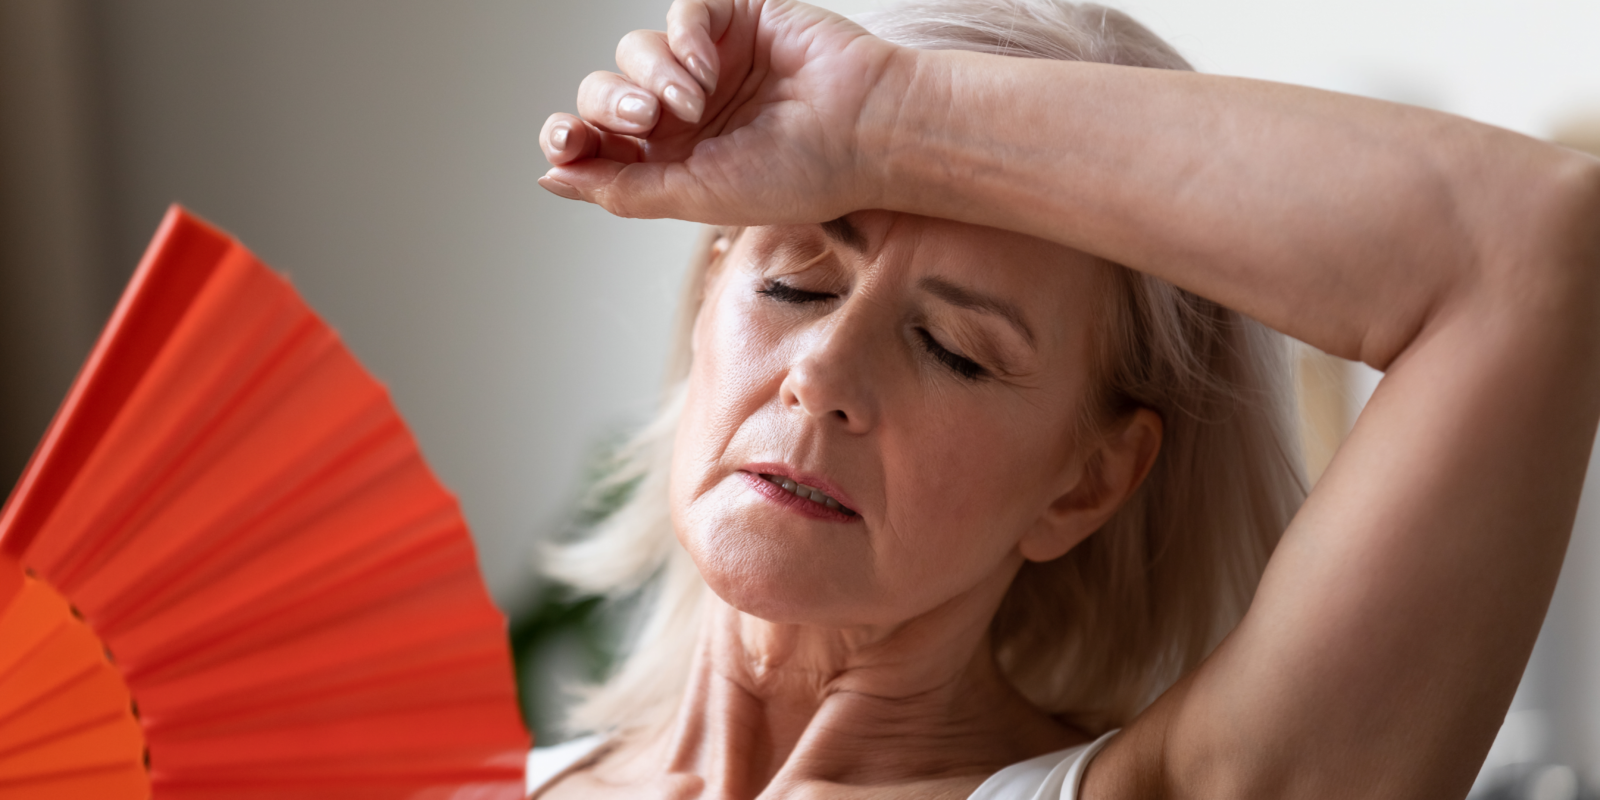 Łysienie związane z menopauzą